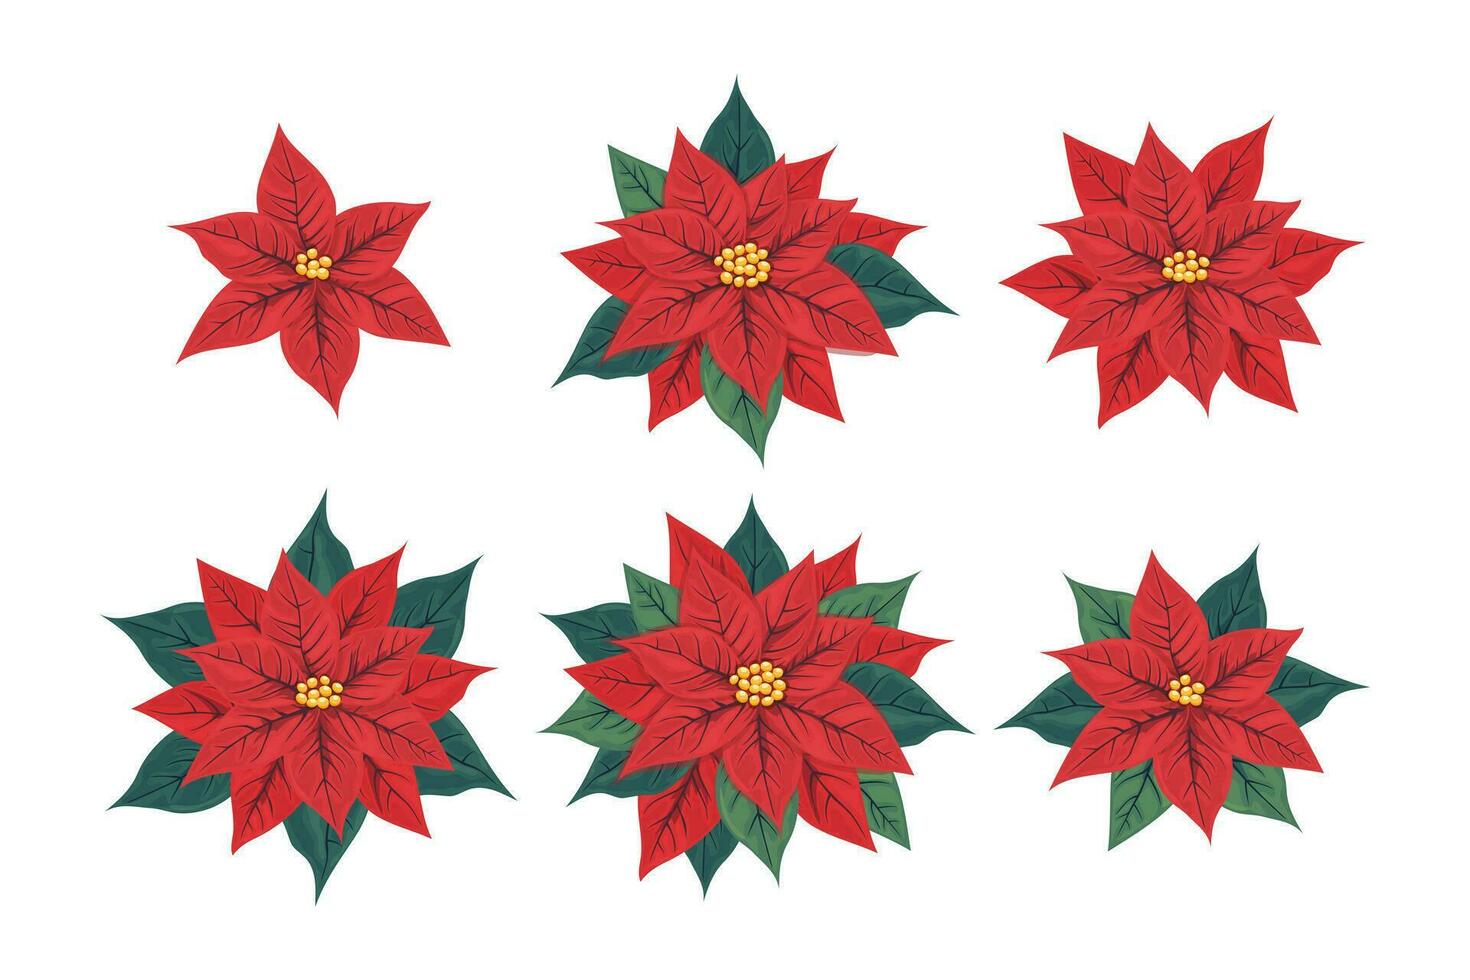 julstjärna blomma uppsättning. olika blomställningar av pulcherrima med röd och grön löv. symbol av jul och ny år. vektor illustration.